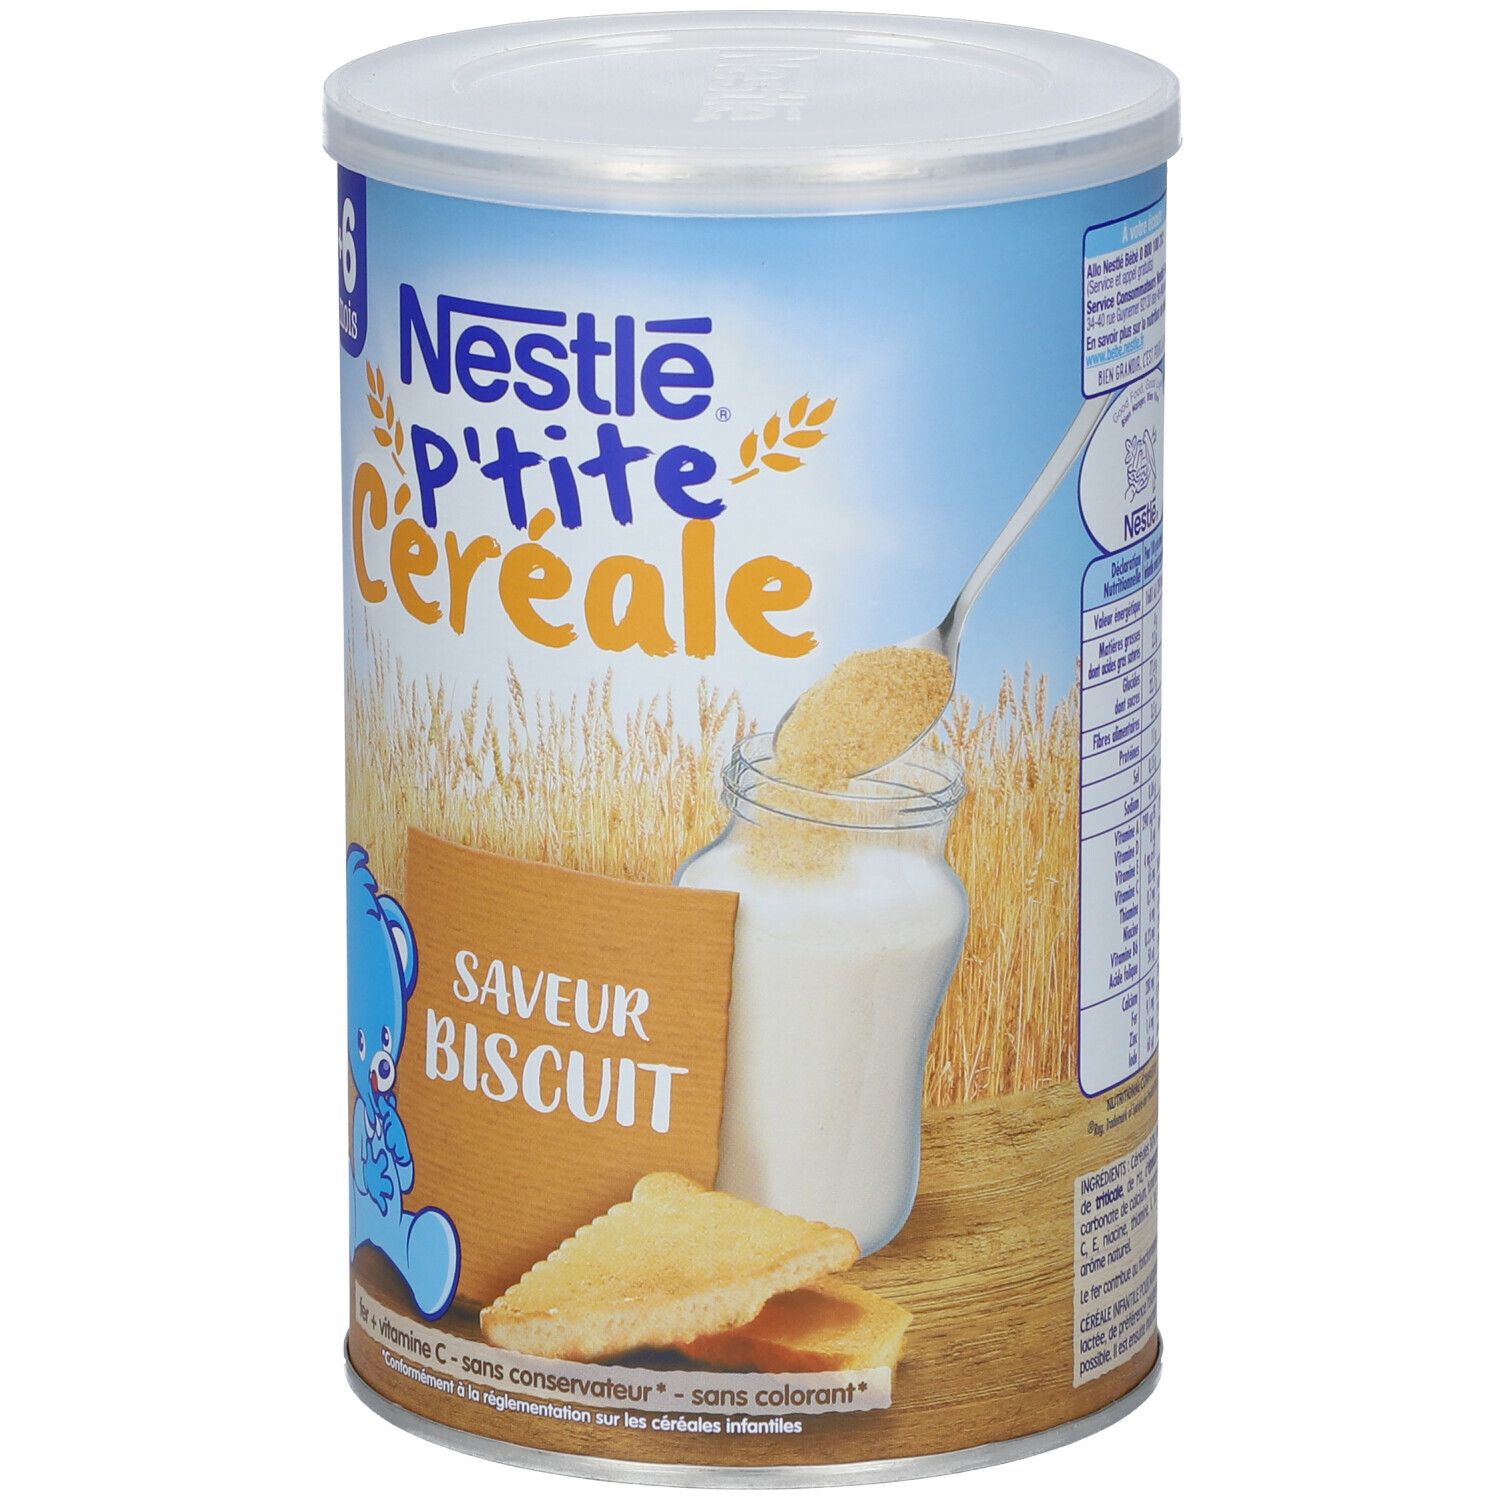 Nestlé P'tite Céréale saveur biscuit pour bébé